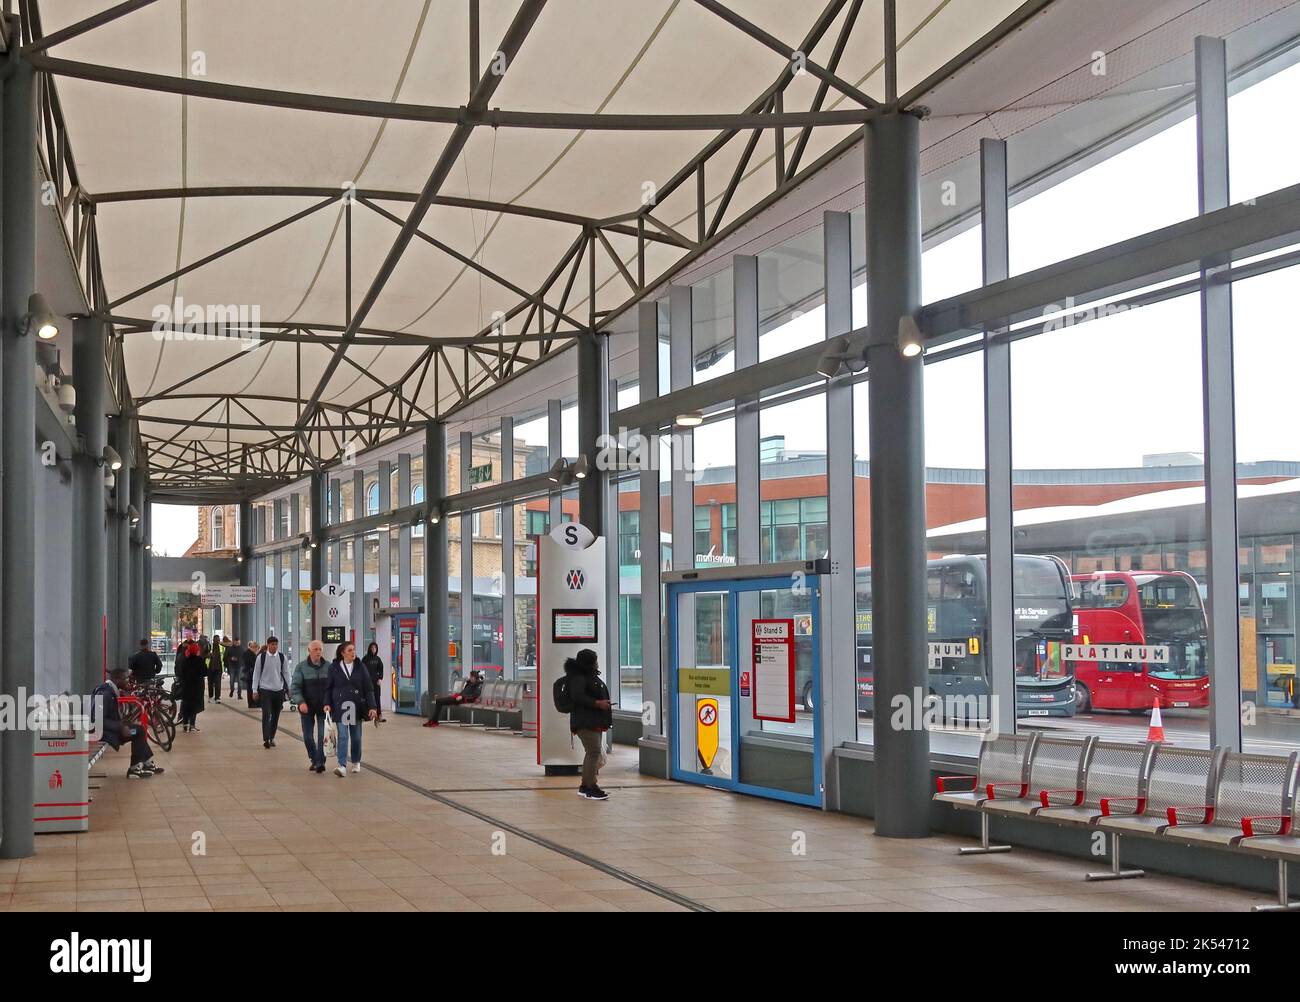 Gare routière et échangeur de Wolverhampton, Wolverhampton, West Midlands, Angleterre, Royaume-Uni, WV1 1LD Banque D'Images